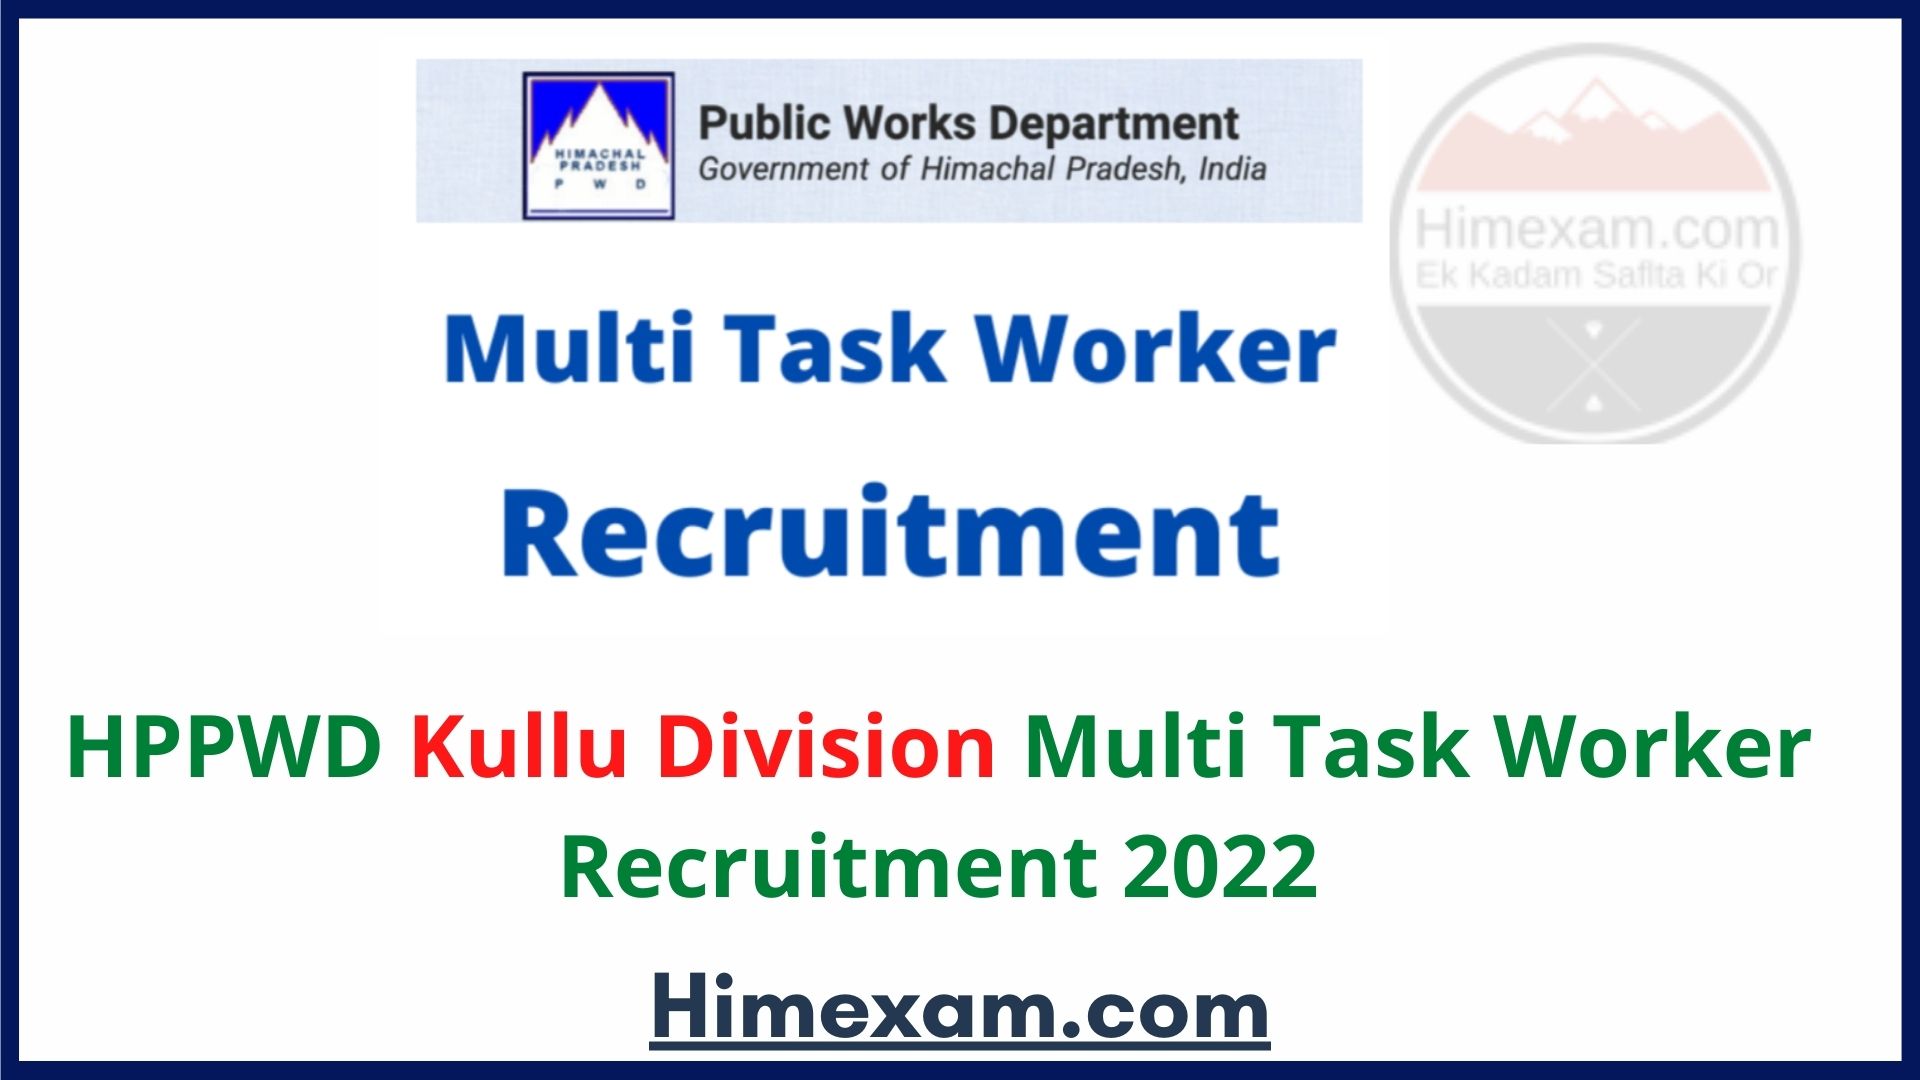 HPPWD Kullu Division Multi Task Worker Recruitment 2022